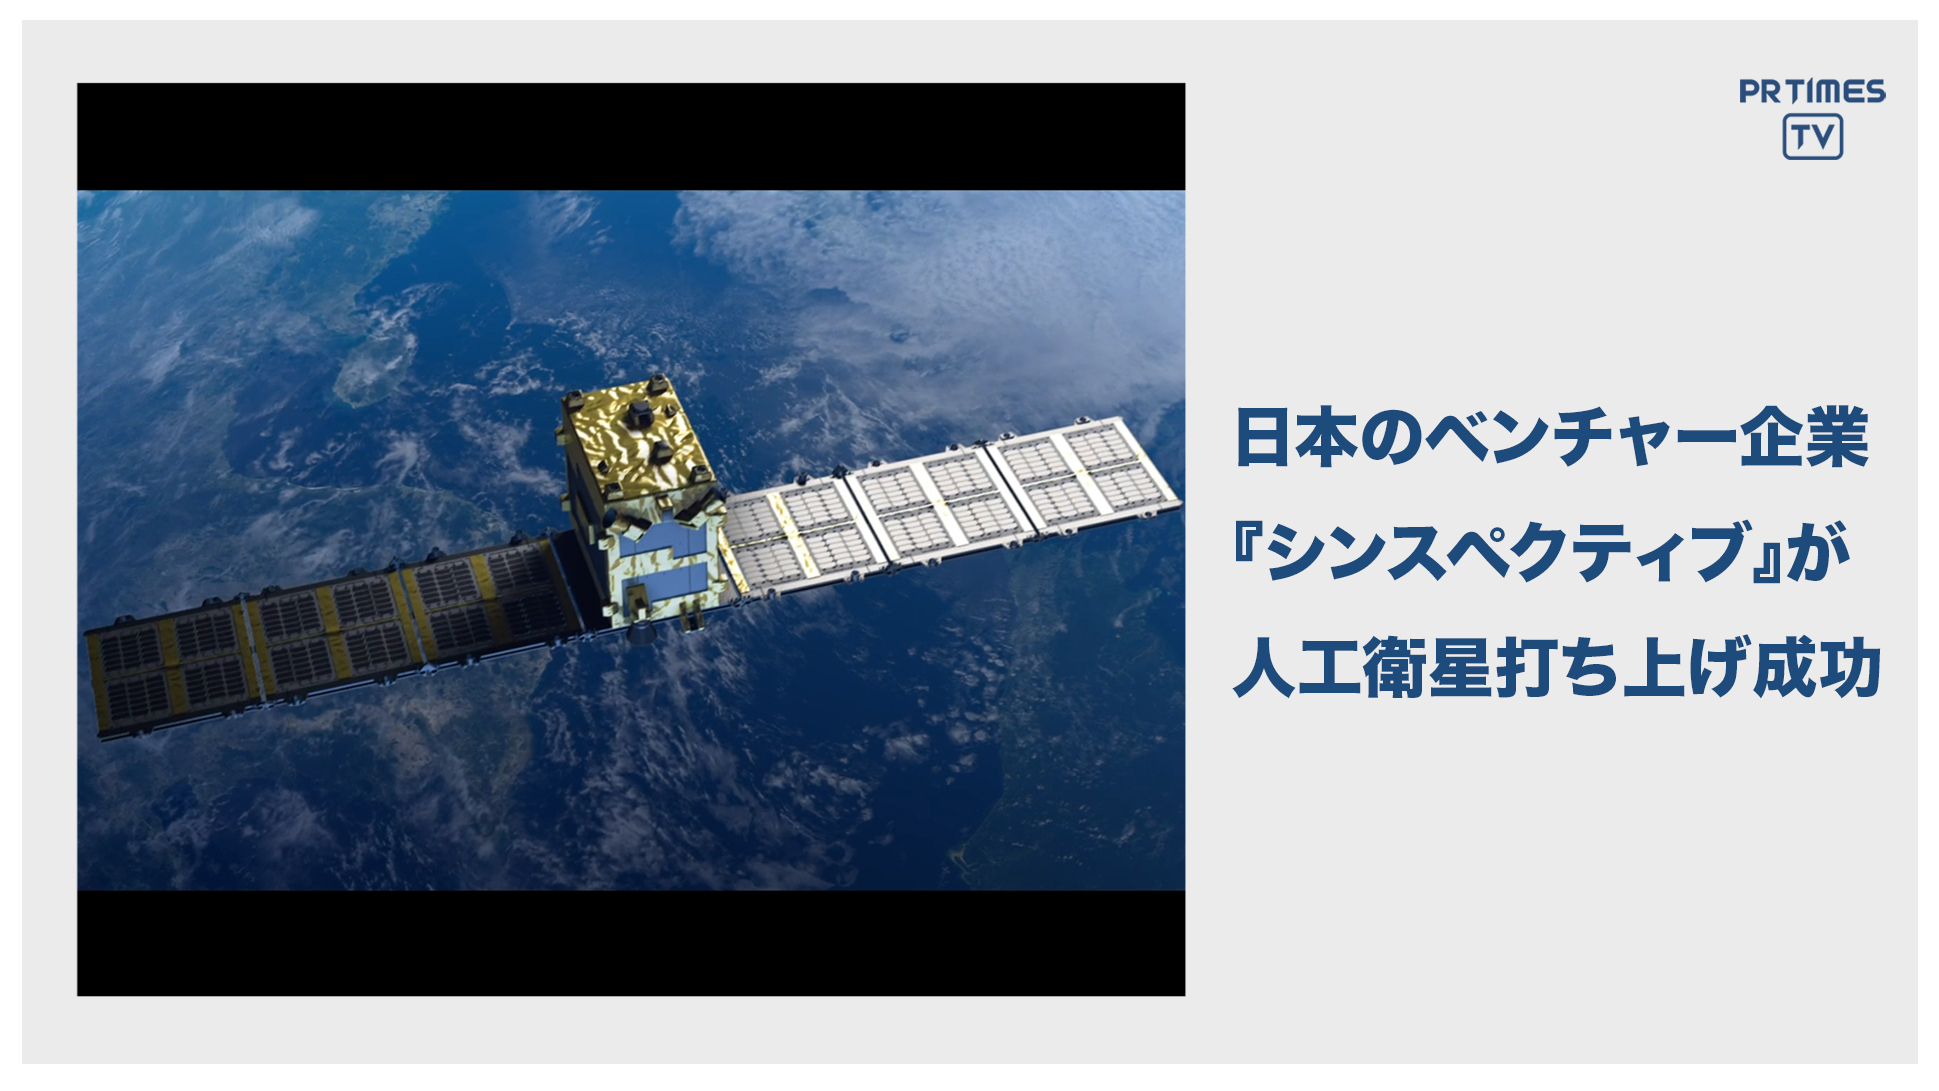 衛星データビジネスの宇宙スタートアップSynspective、自社初の小型SAR衛星「Strix-α」の軌道投入に成功